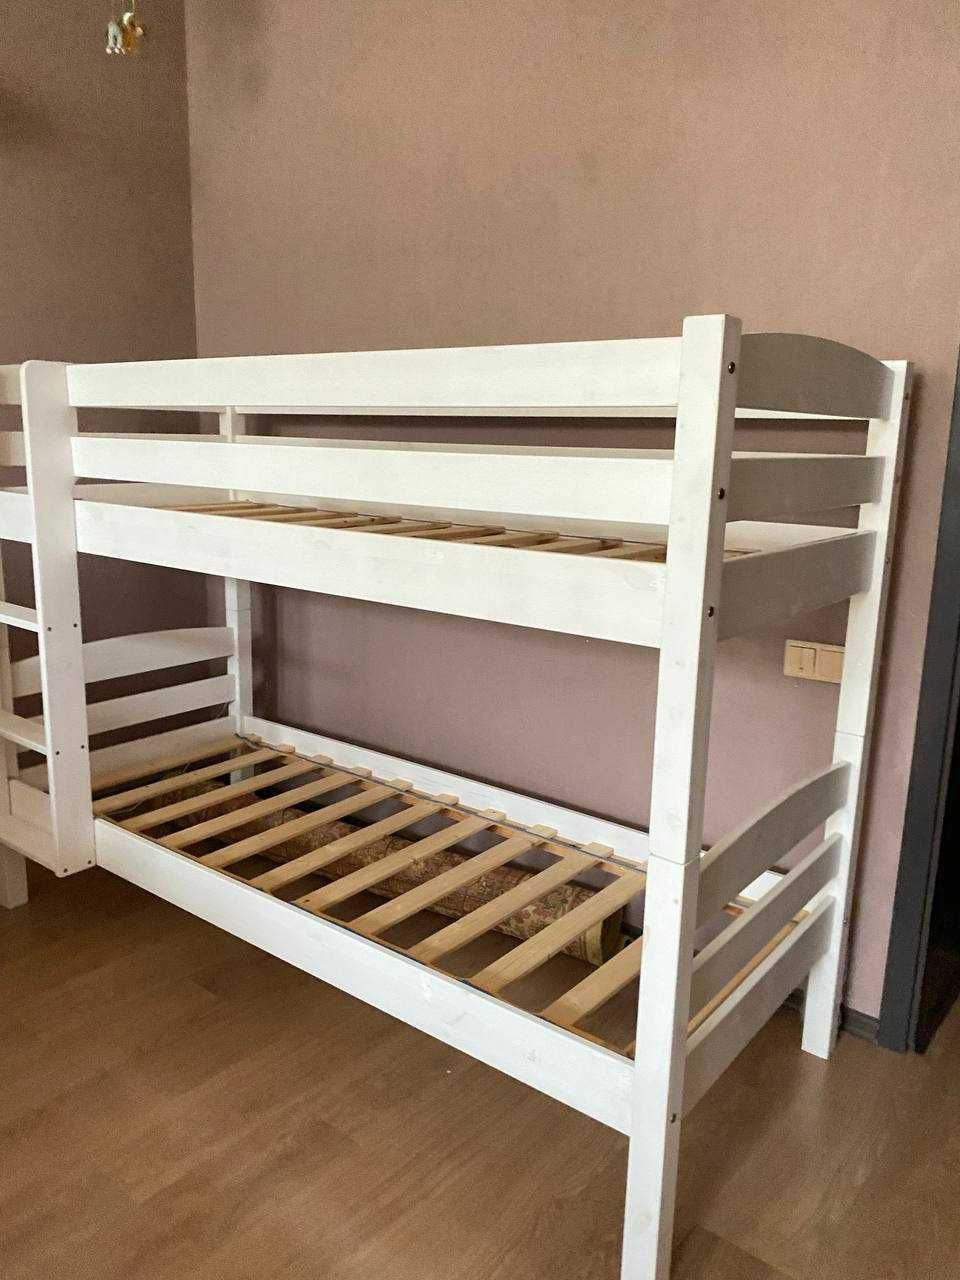 Продам двухэтажную кровать из натурального дерева, цвет белый 80х200